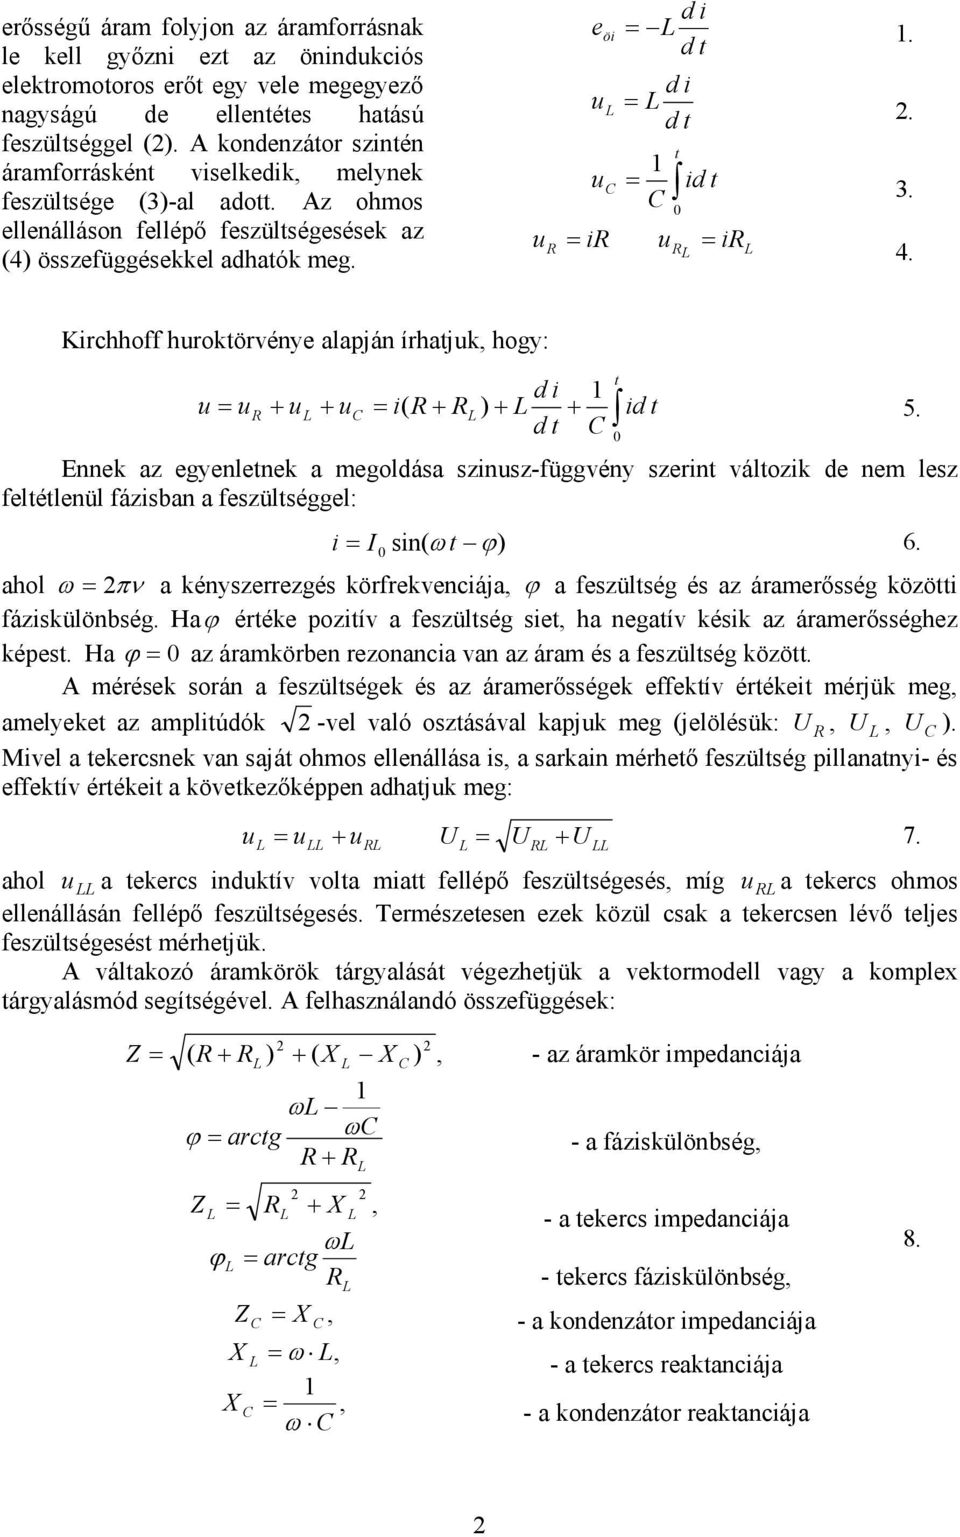 Kirchhoff hrokörvénye alapján írhajk hogy: d i + + i( + + + id 5. d Ennek az egyenlenek a megoldása szinsz-függvény szerin válozik de nem lesz felélenül fázisban a feszülséggel: i I sin( ω ϕ 6.